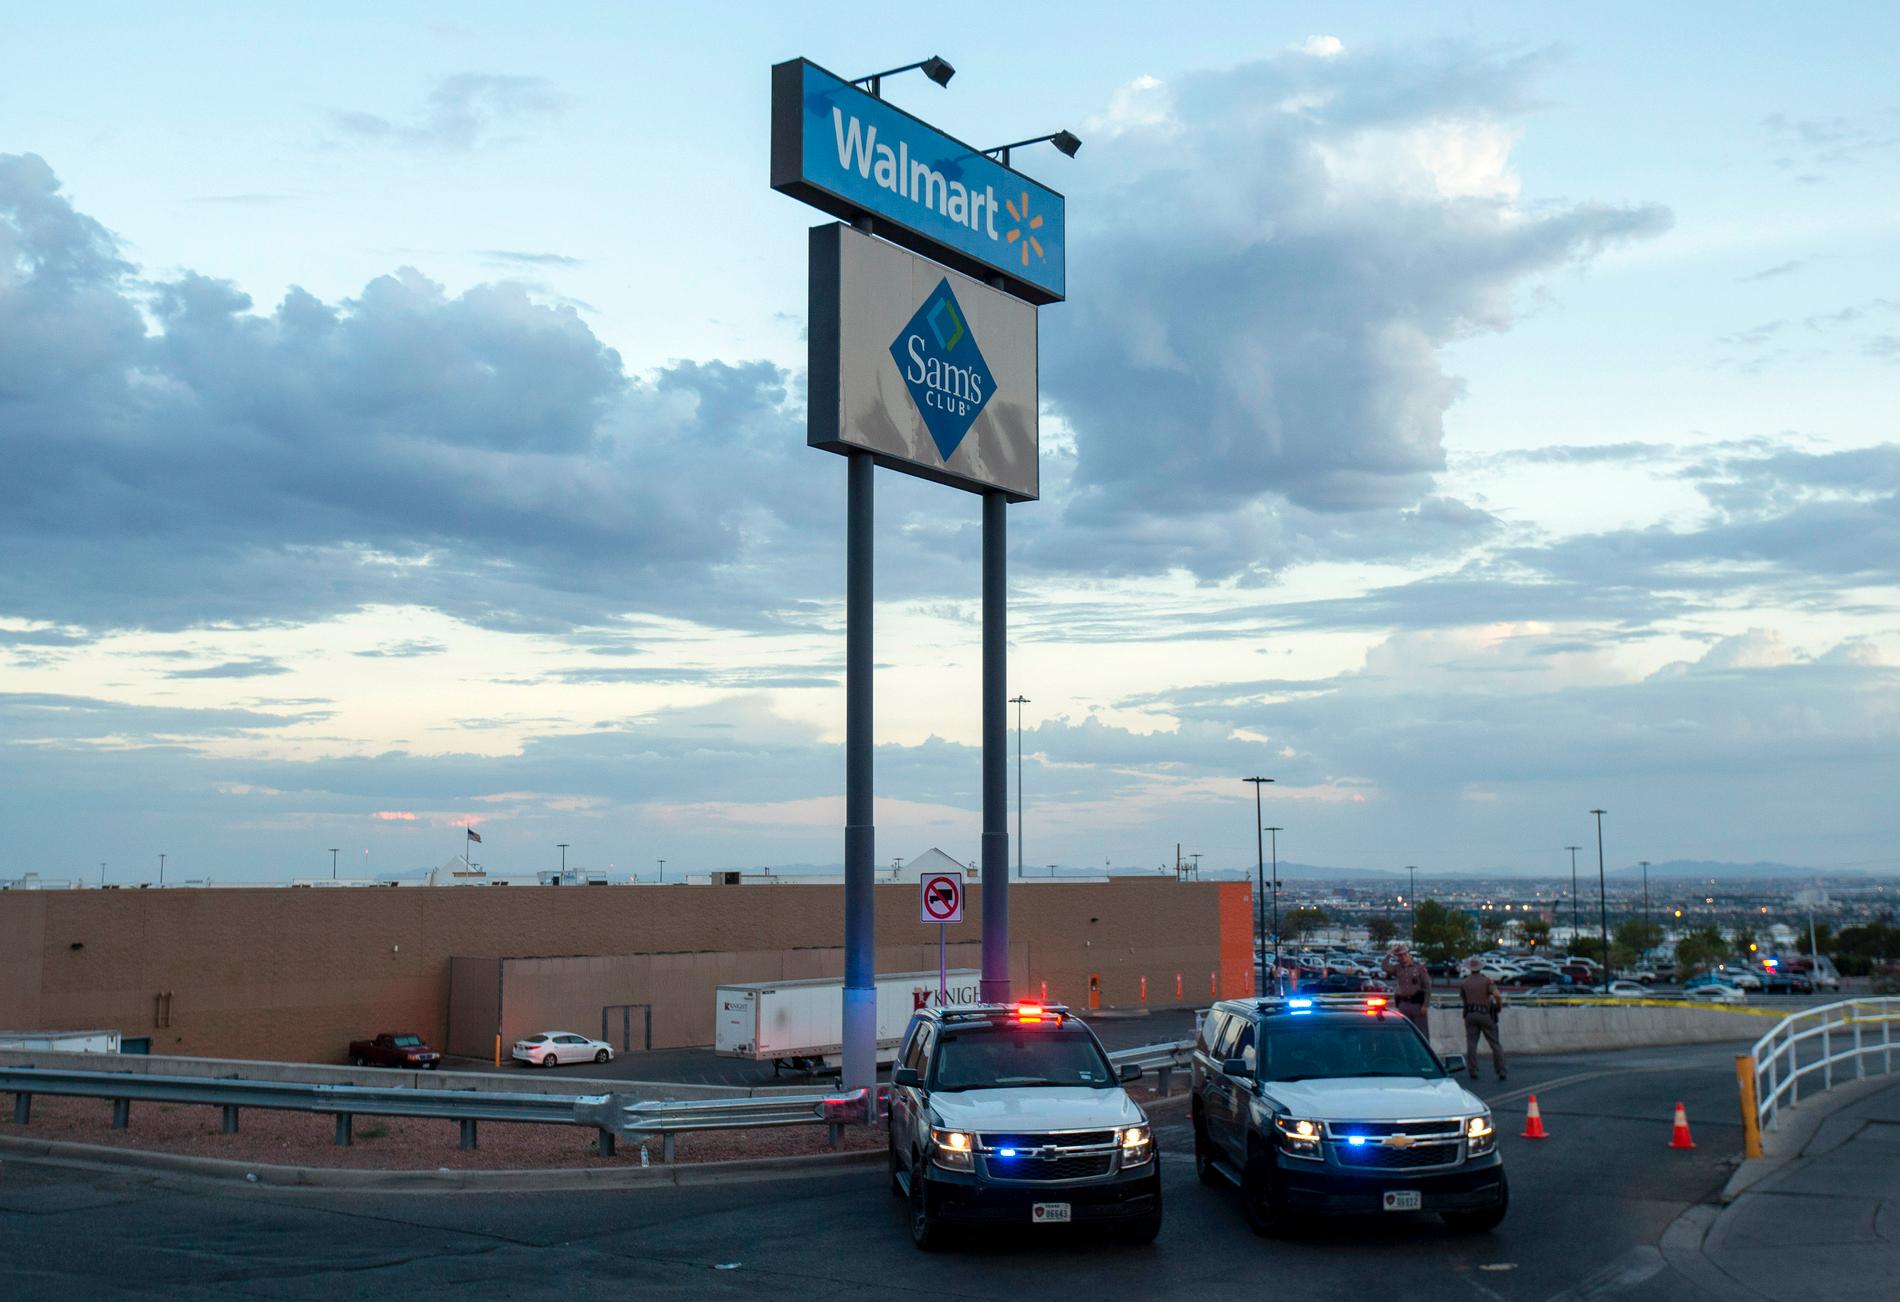 22 personer dödades när en  21-årig man öppnade eld inne på varuhuset Walmart i El Paso, Texas den 3 augusti.